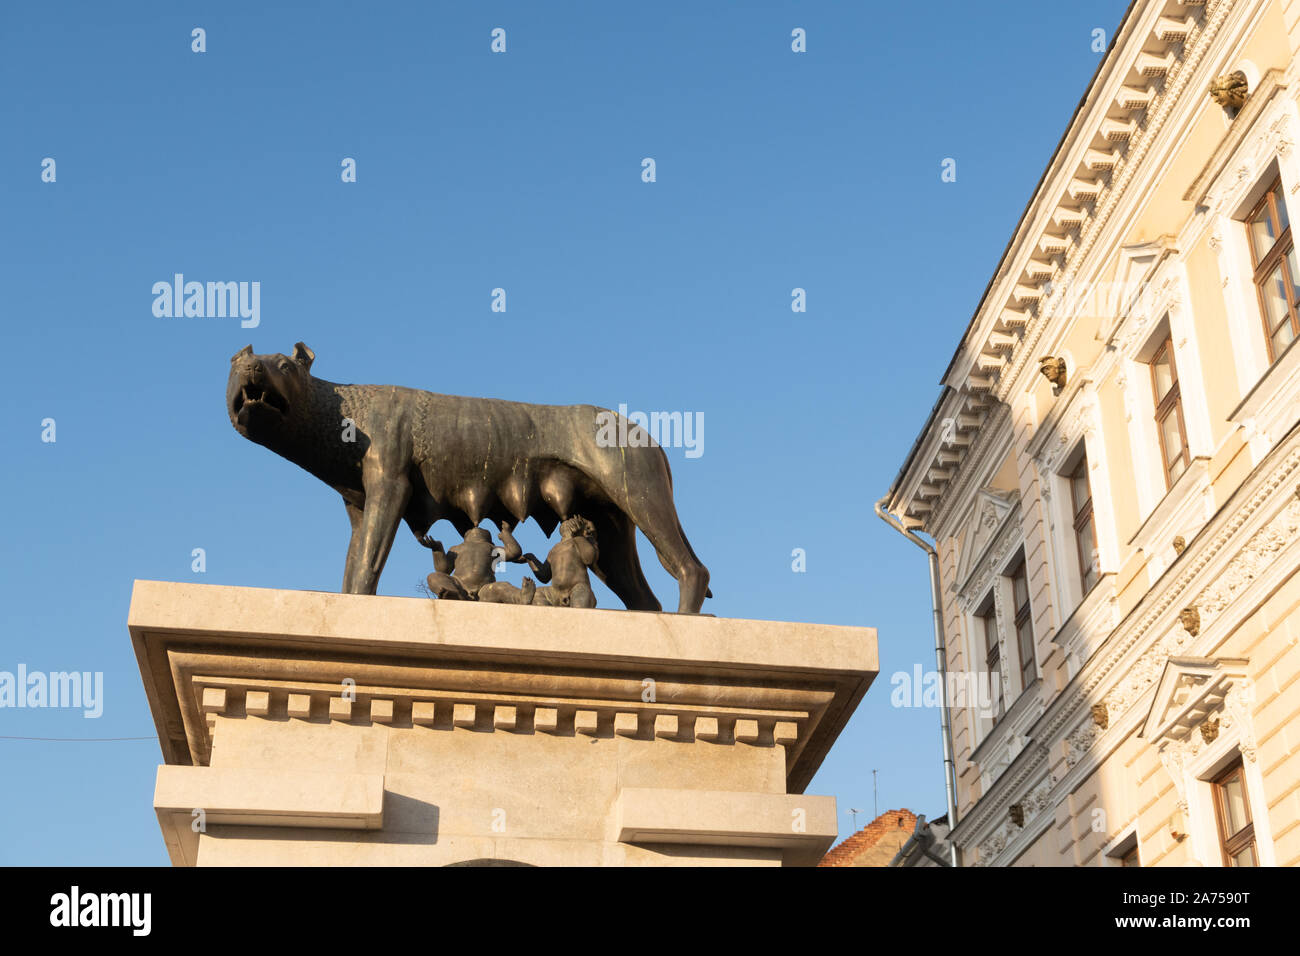 Cluj Napoca, Romania - 24 OTT 2019: Il lupo capitolino statua (Statuia Lupoaicei) in Cluj-Napoca si trova sul Boulevard Eroilor nel centro della città Foto Stock